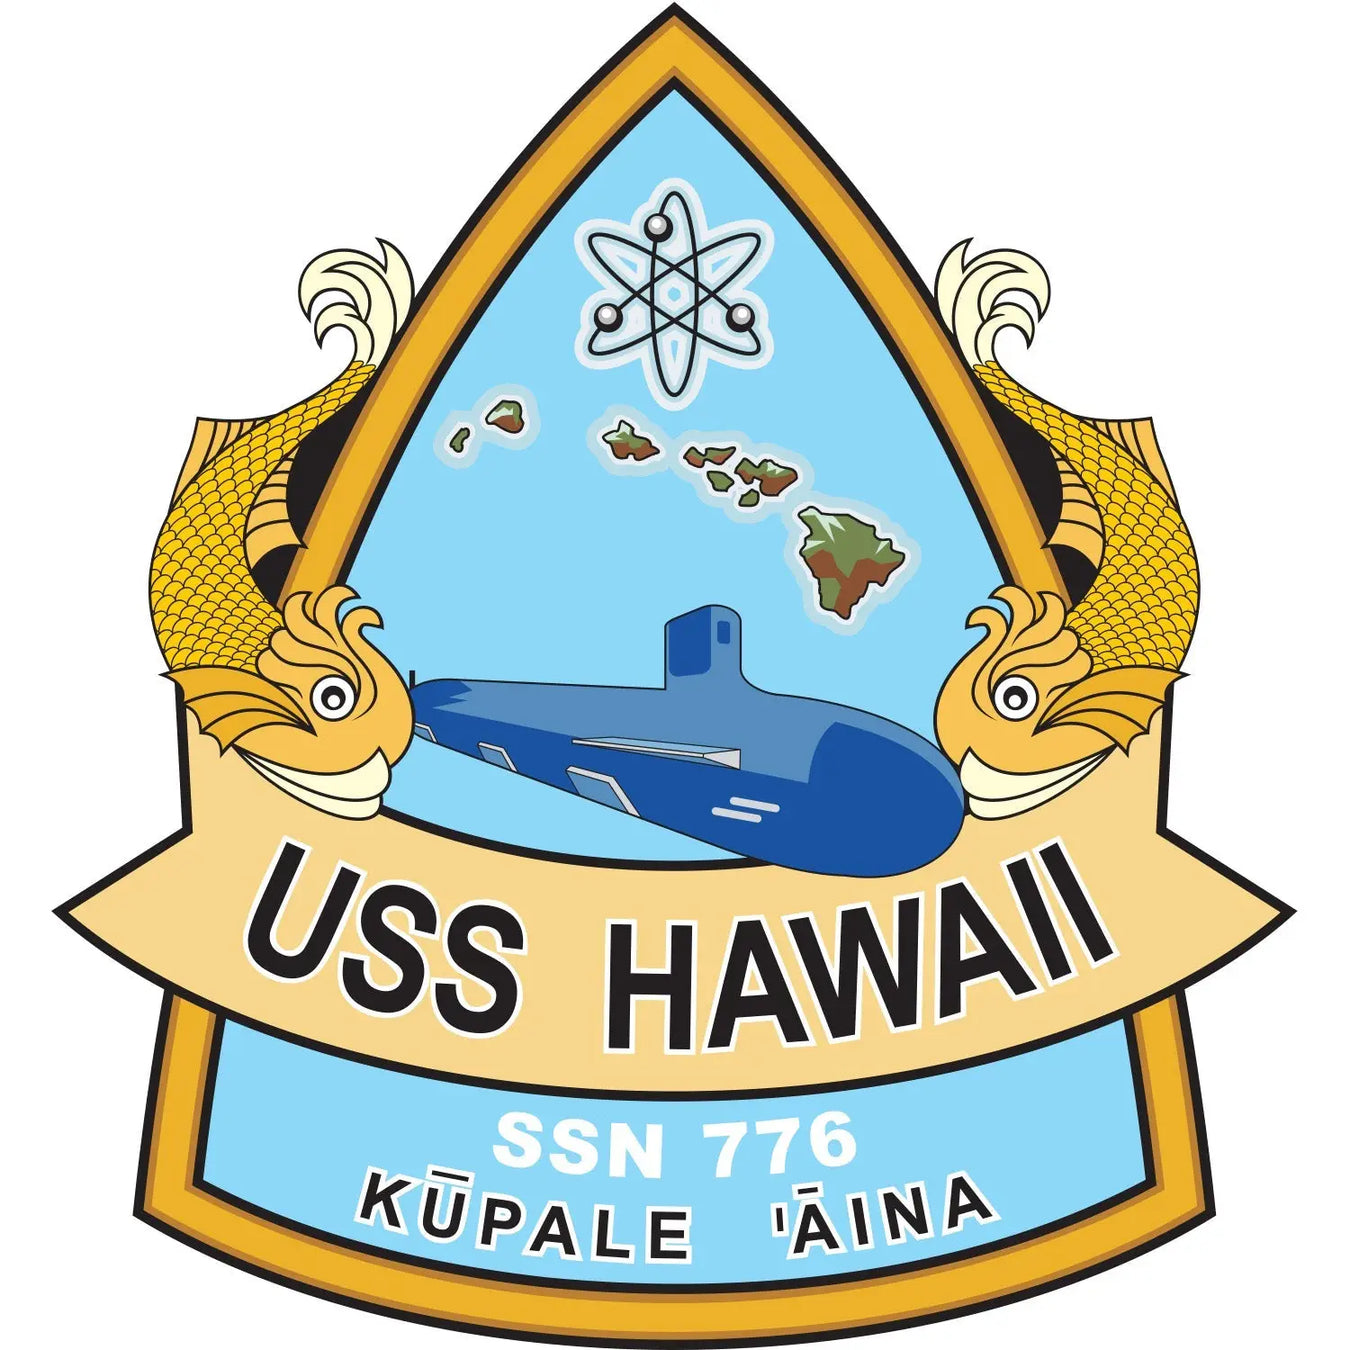 USS Hawaii (SSN-776)